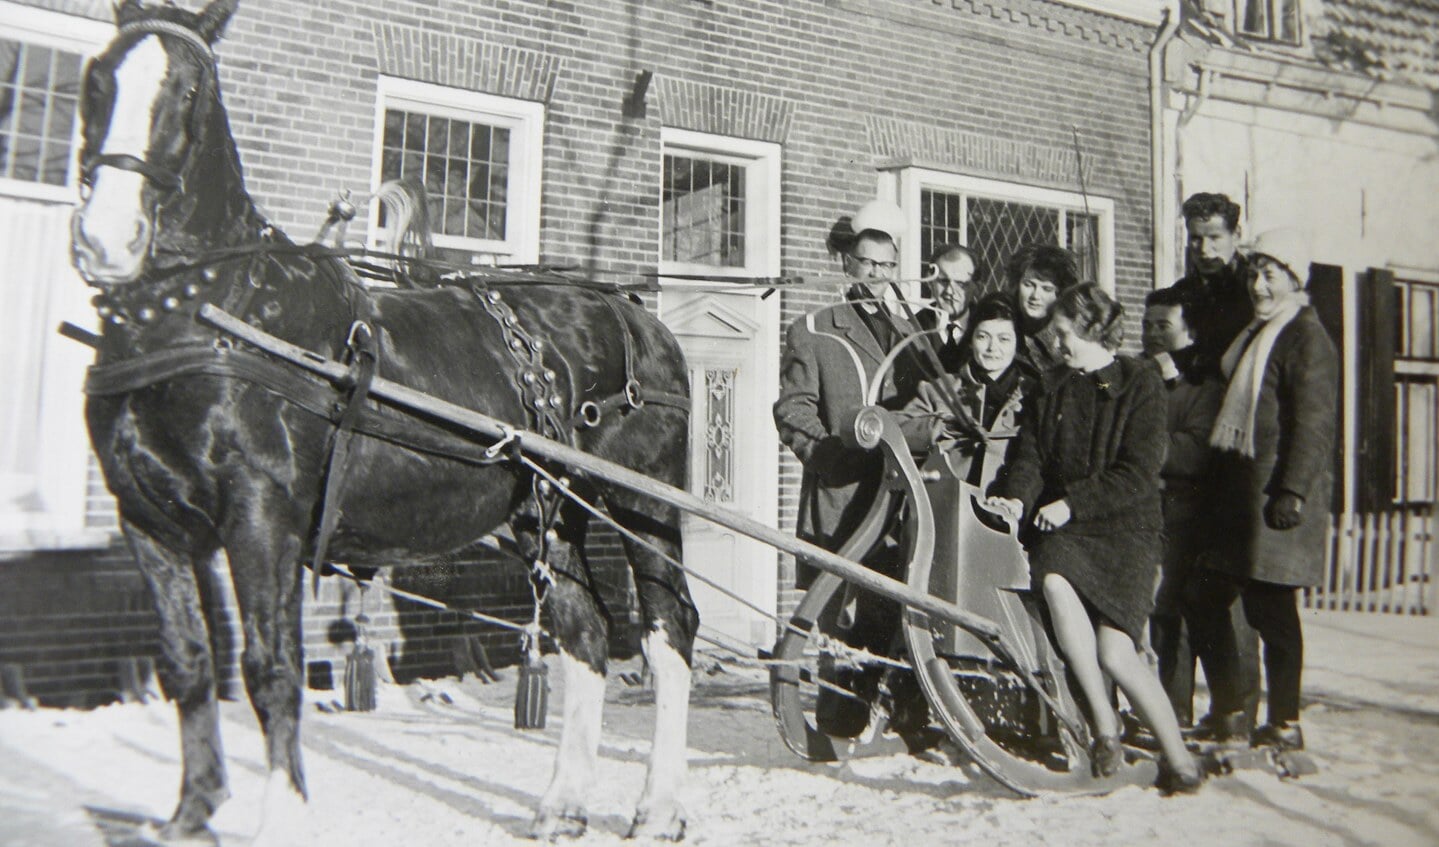 Met de arrenslee naar het dorp (1963)